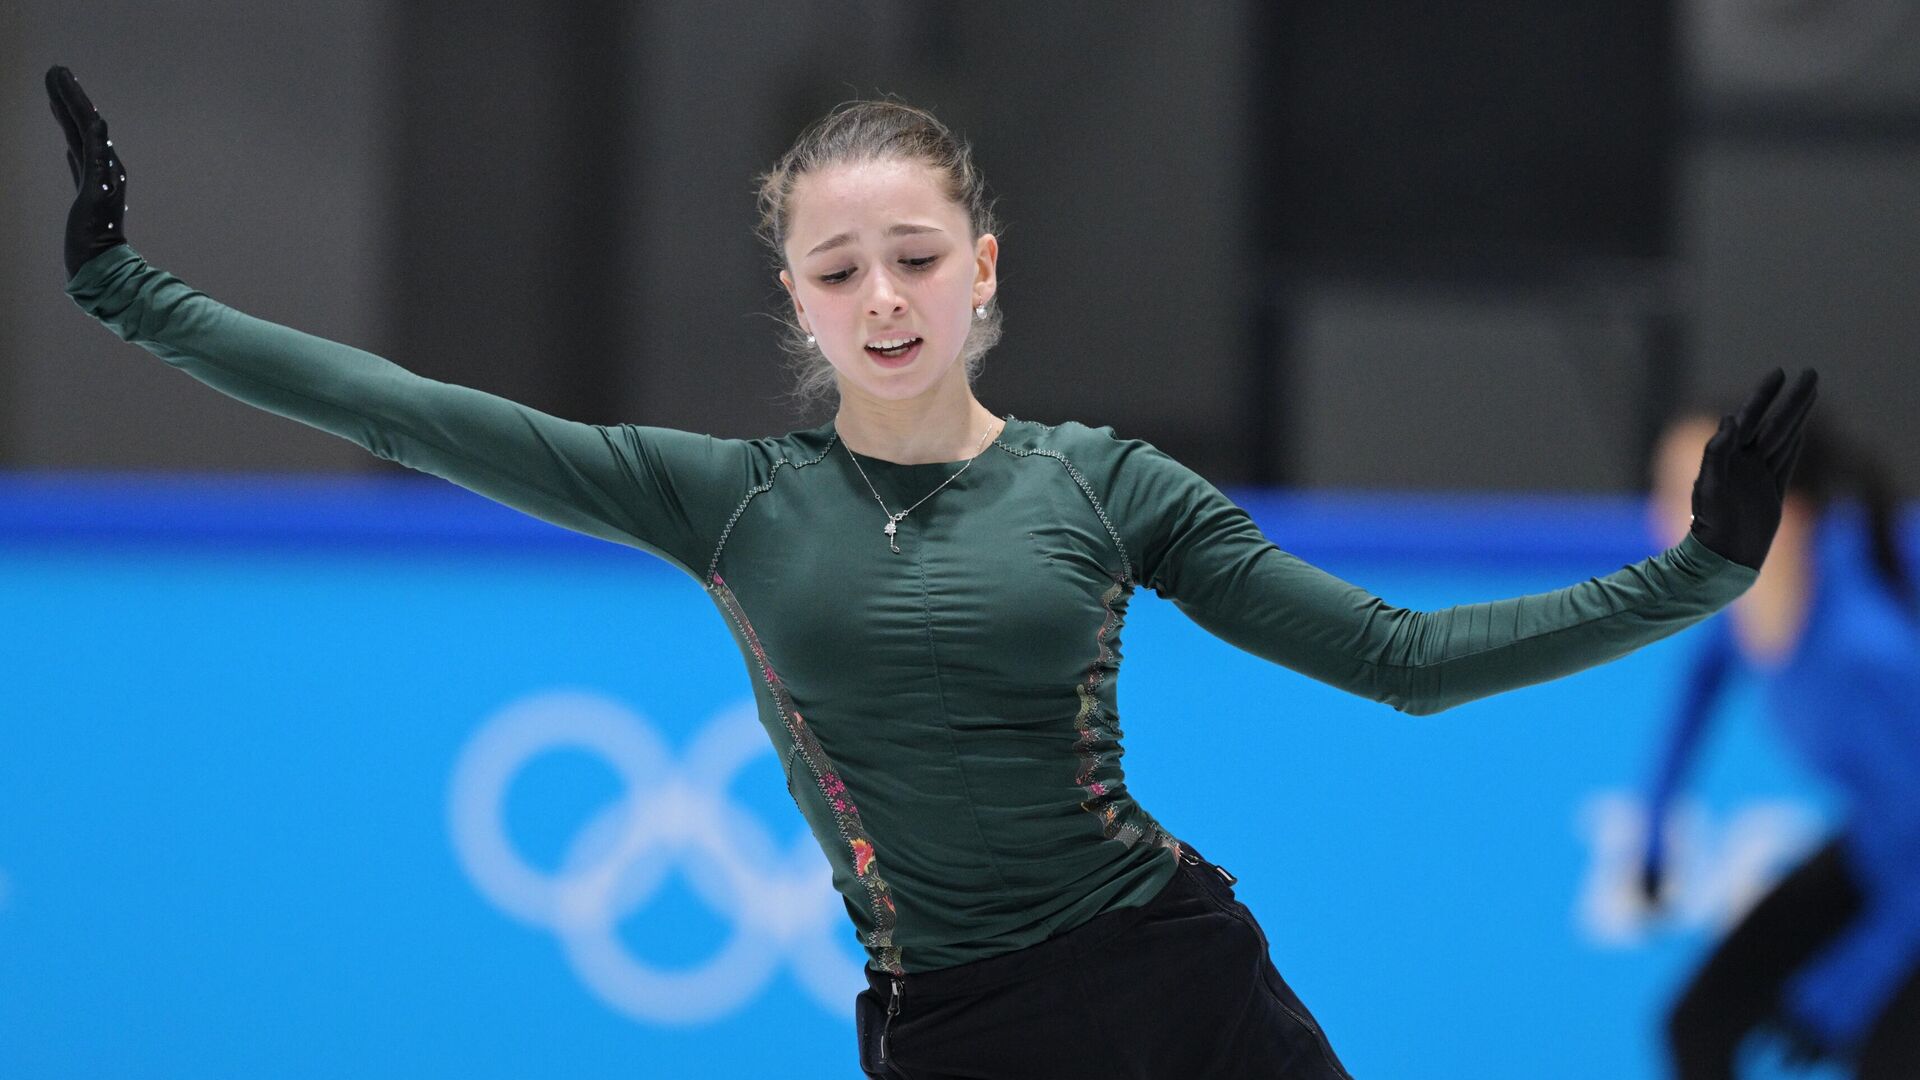 Rusya Olimpiyat Komitesi (ROK) adı altında yarışan 15 yaşındaki artistik patinajcı Kamila Valiyeva - Sputnik Türkiye, 1920, 14.02.2022